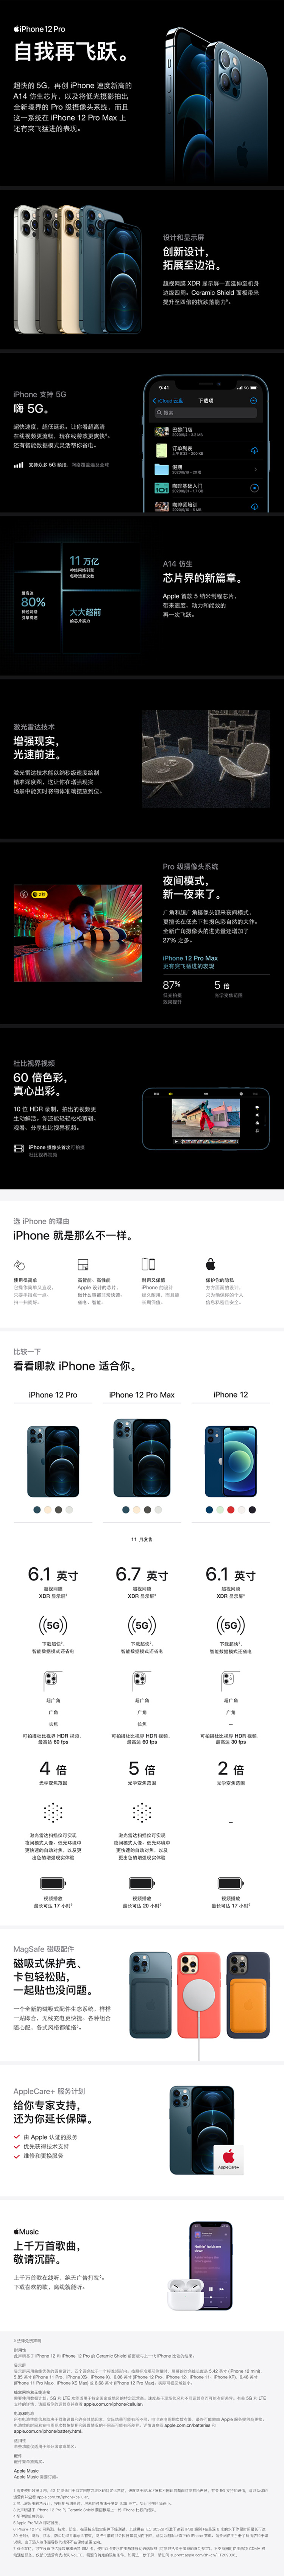 中山手机网 苹果(apple) iphone 12 promax手机专卖